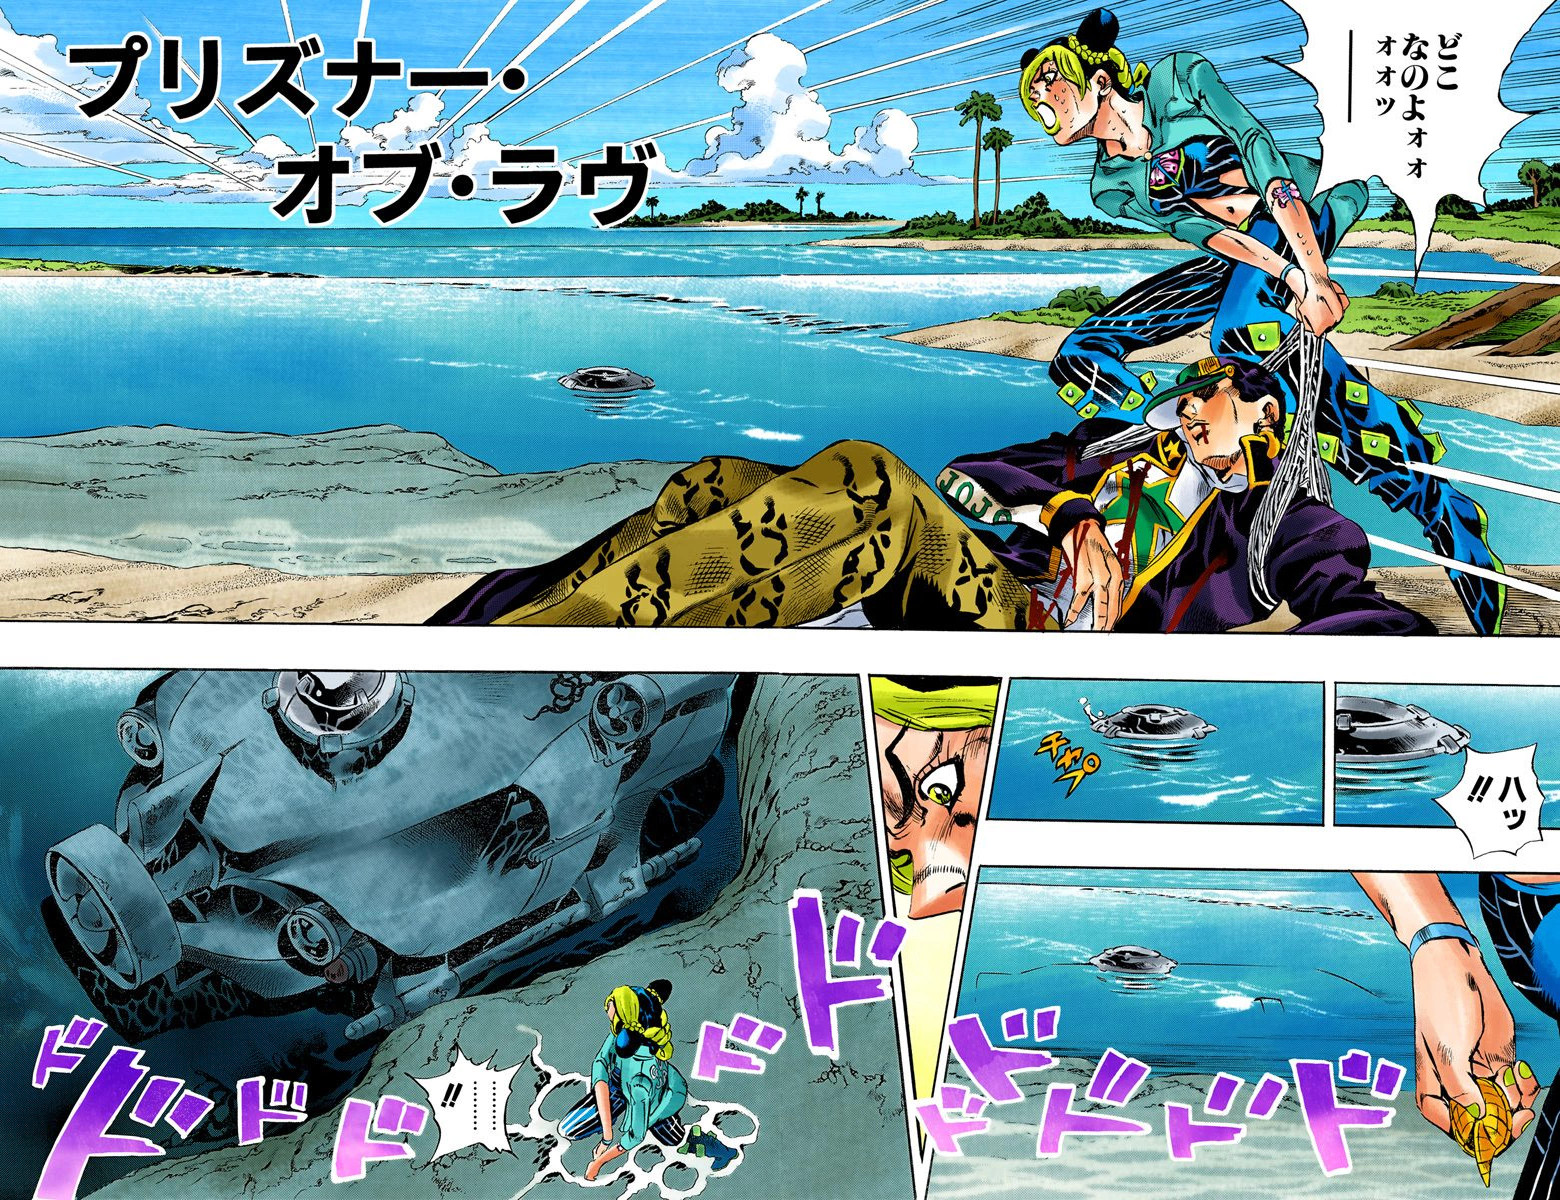 Does Jotaro die in Stone Ocean? JoJo manga series explored